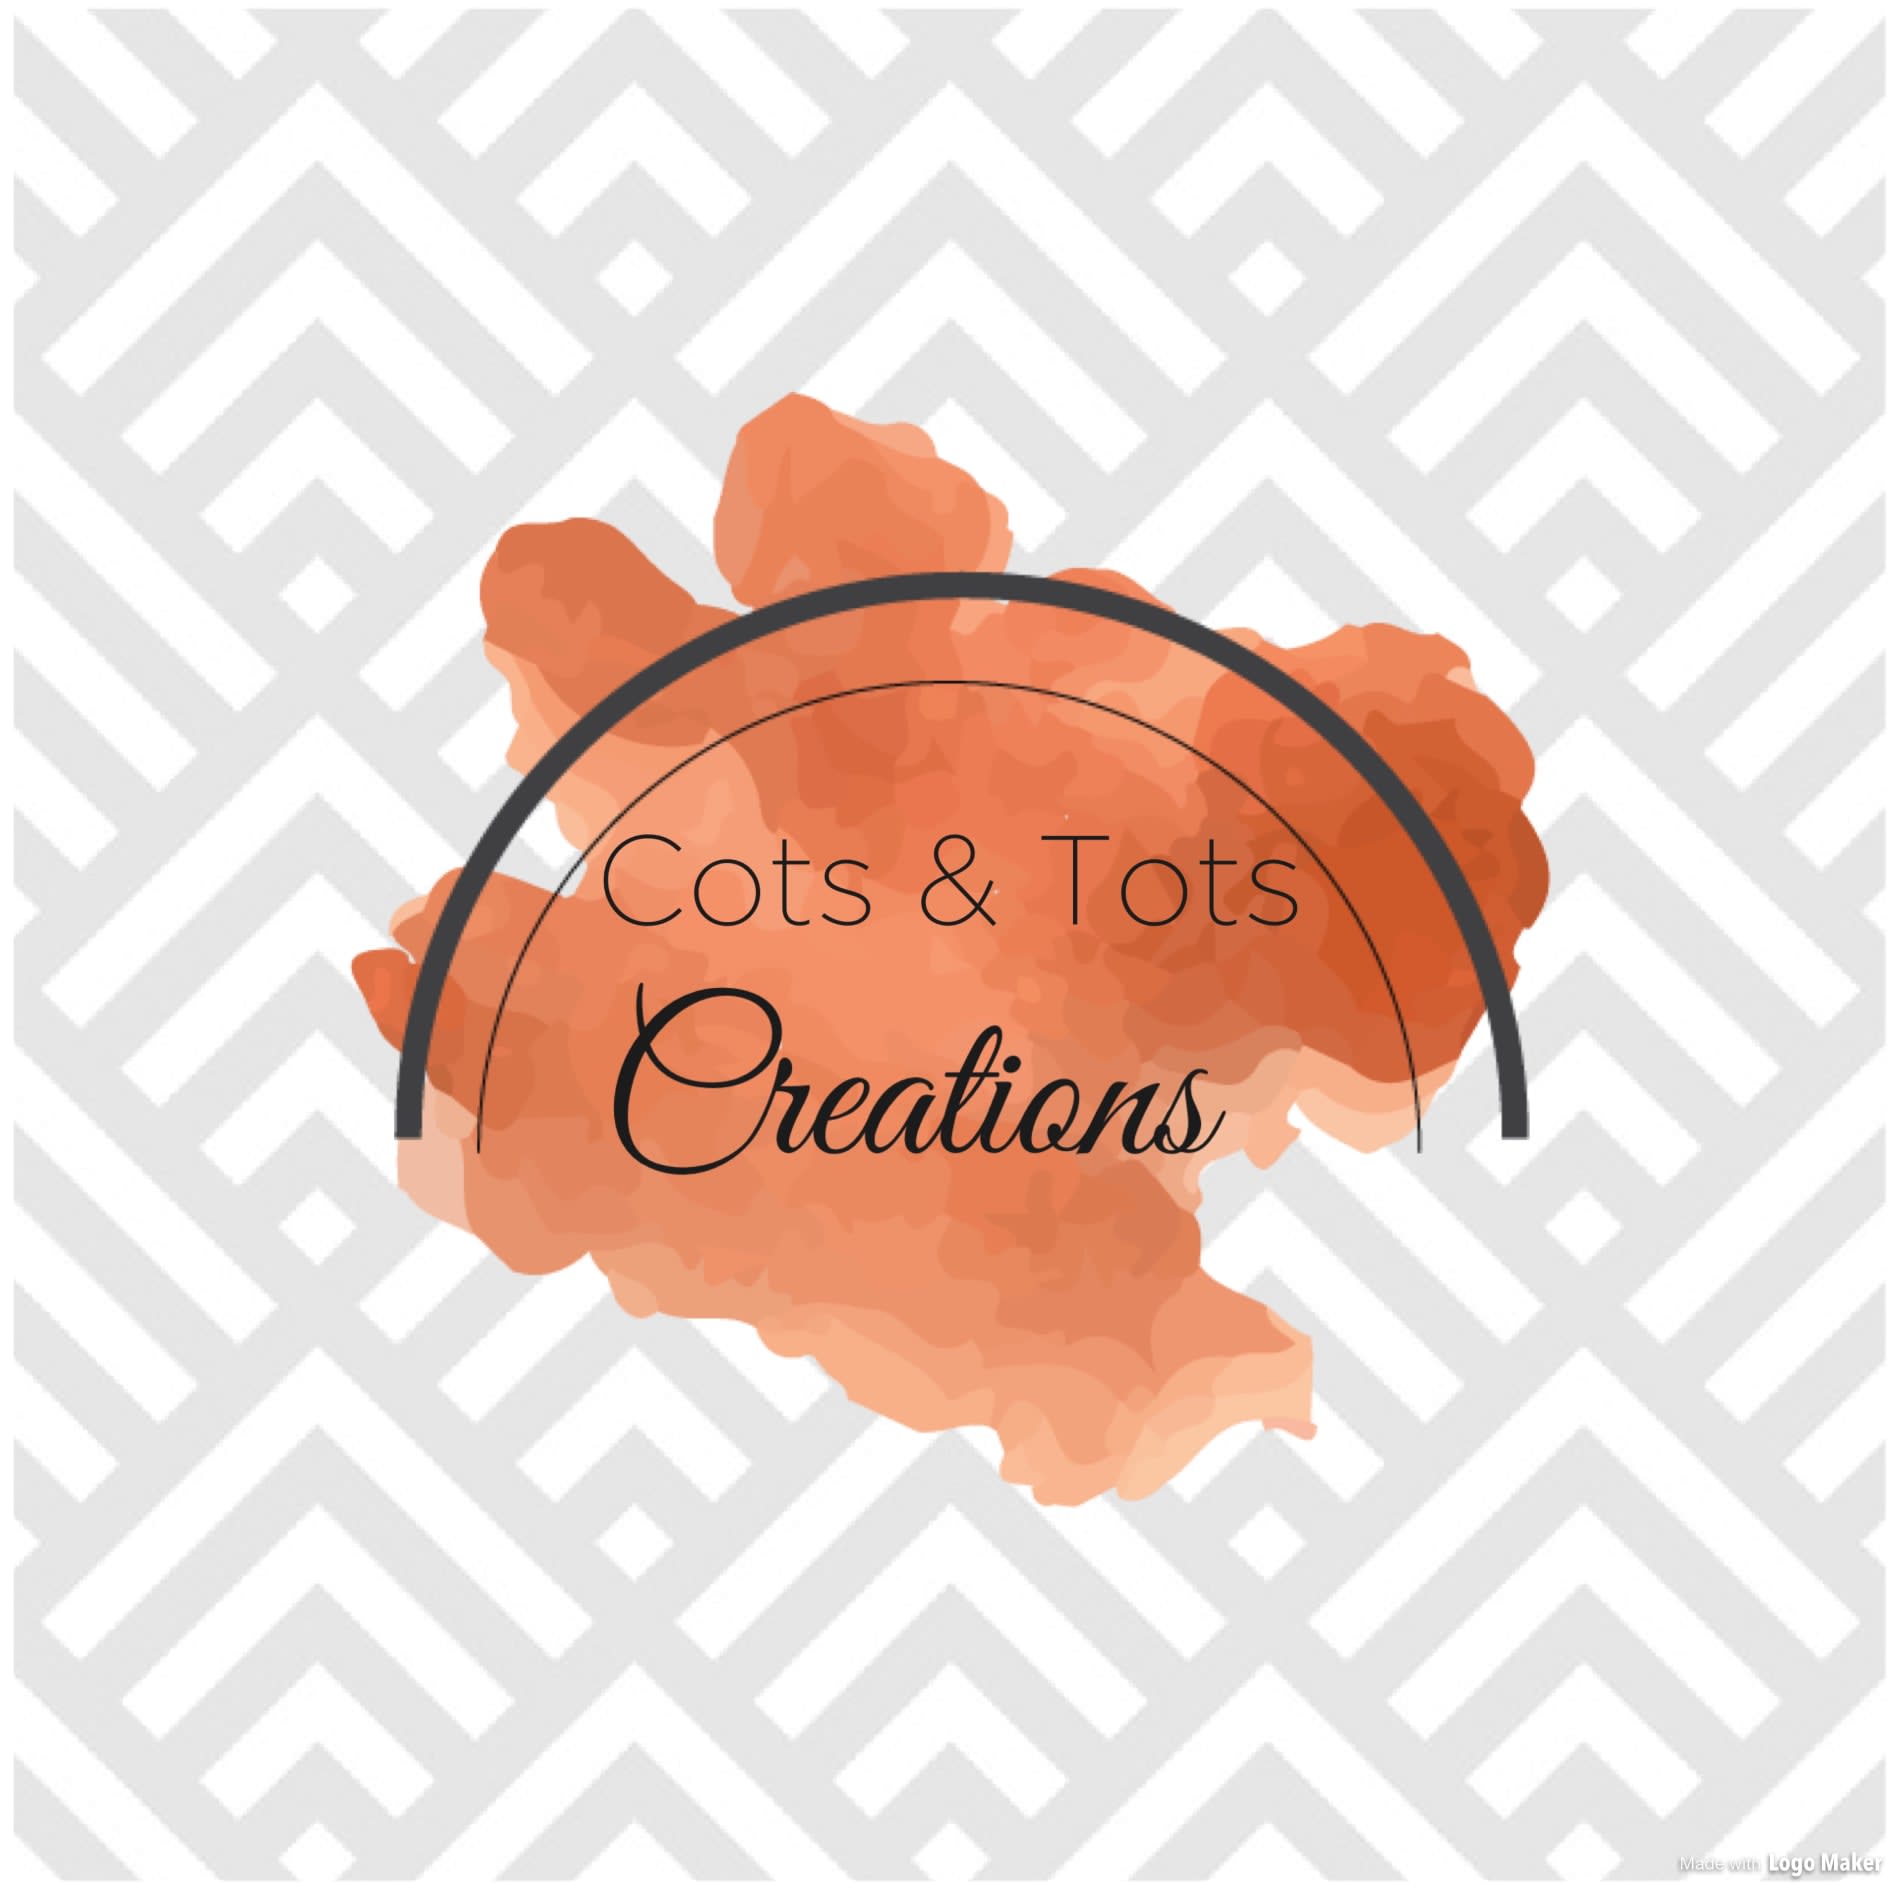 Cots & Tots Creations